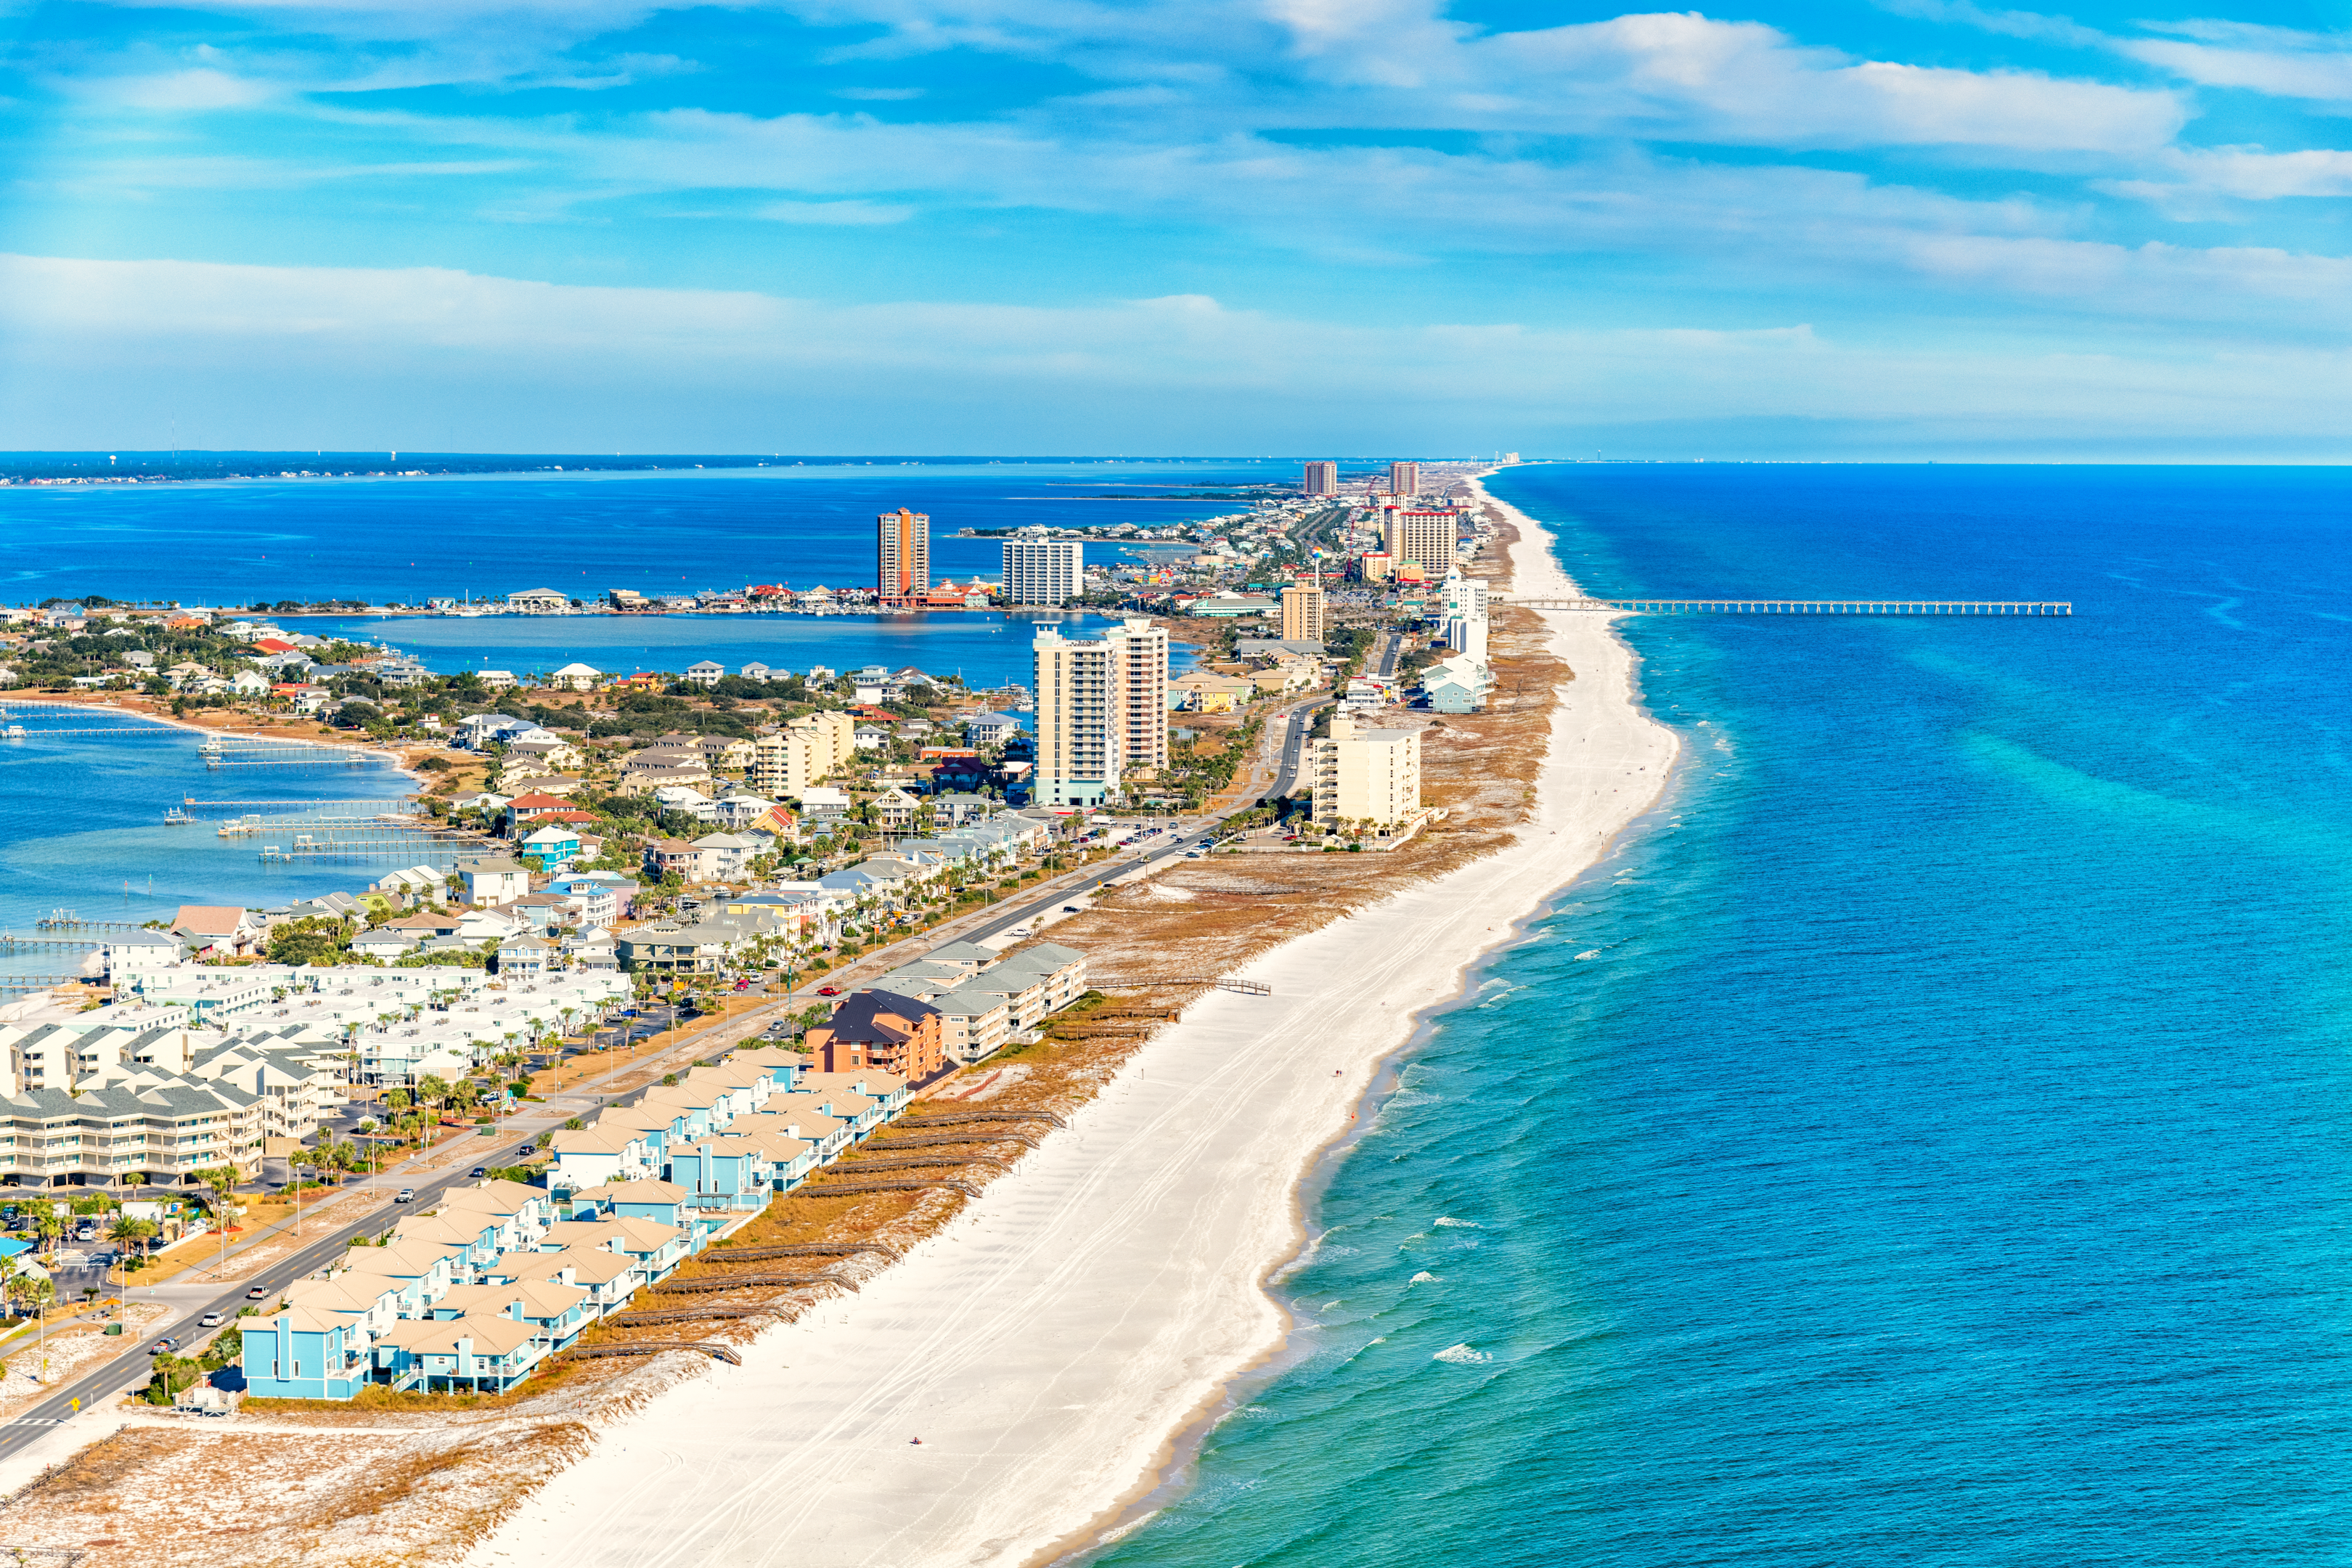 Aurinko, hiekka ja meri: rantojen tutkiminen Orlandossa, lähellä ja kaukana siitä